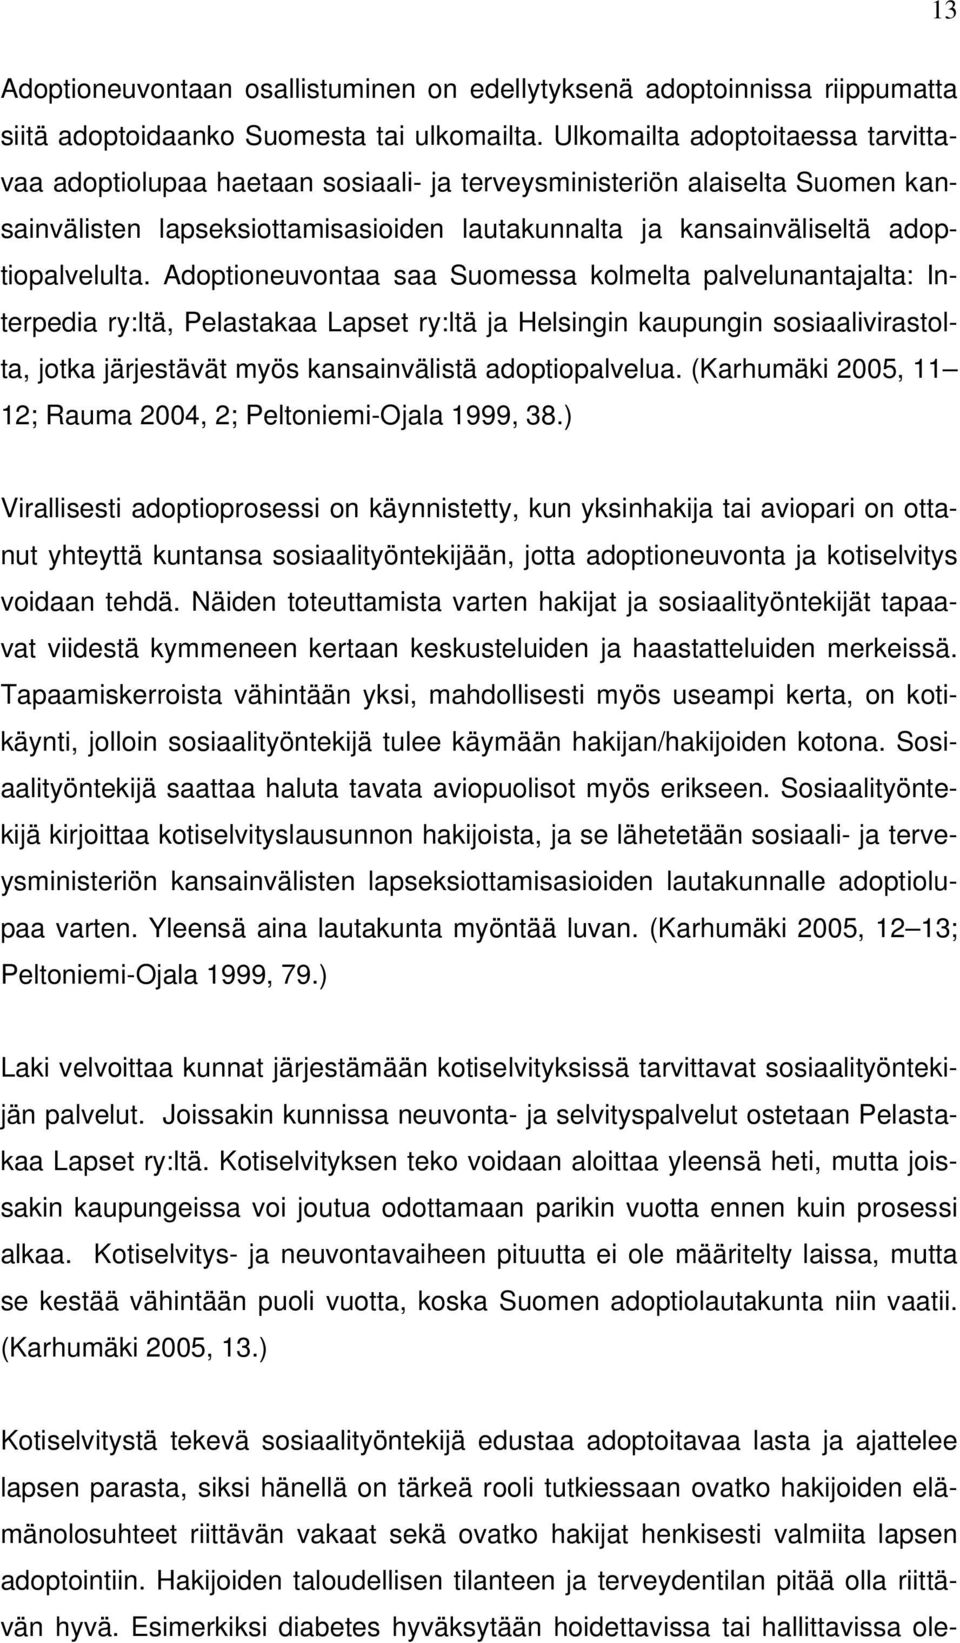 Adoptioneuvontaa saa Suomessa kolmelta palvelunantajalta: Interpedia ry:ltä, Pelastakaa Lapset ry:ltä ja Helsingin kaupungin sosiaalivirastolta, jotka järjestävät myös kansainvälistä adoptiopalvelua.